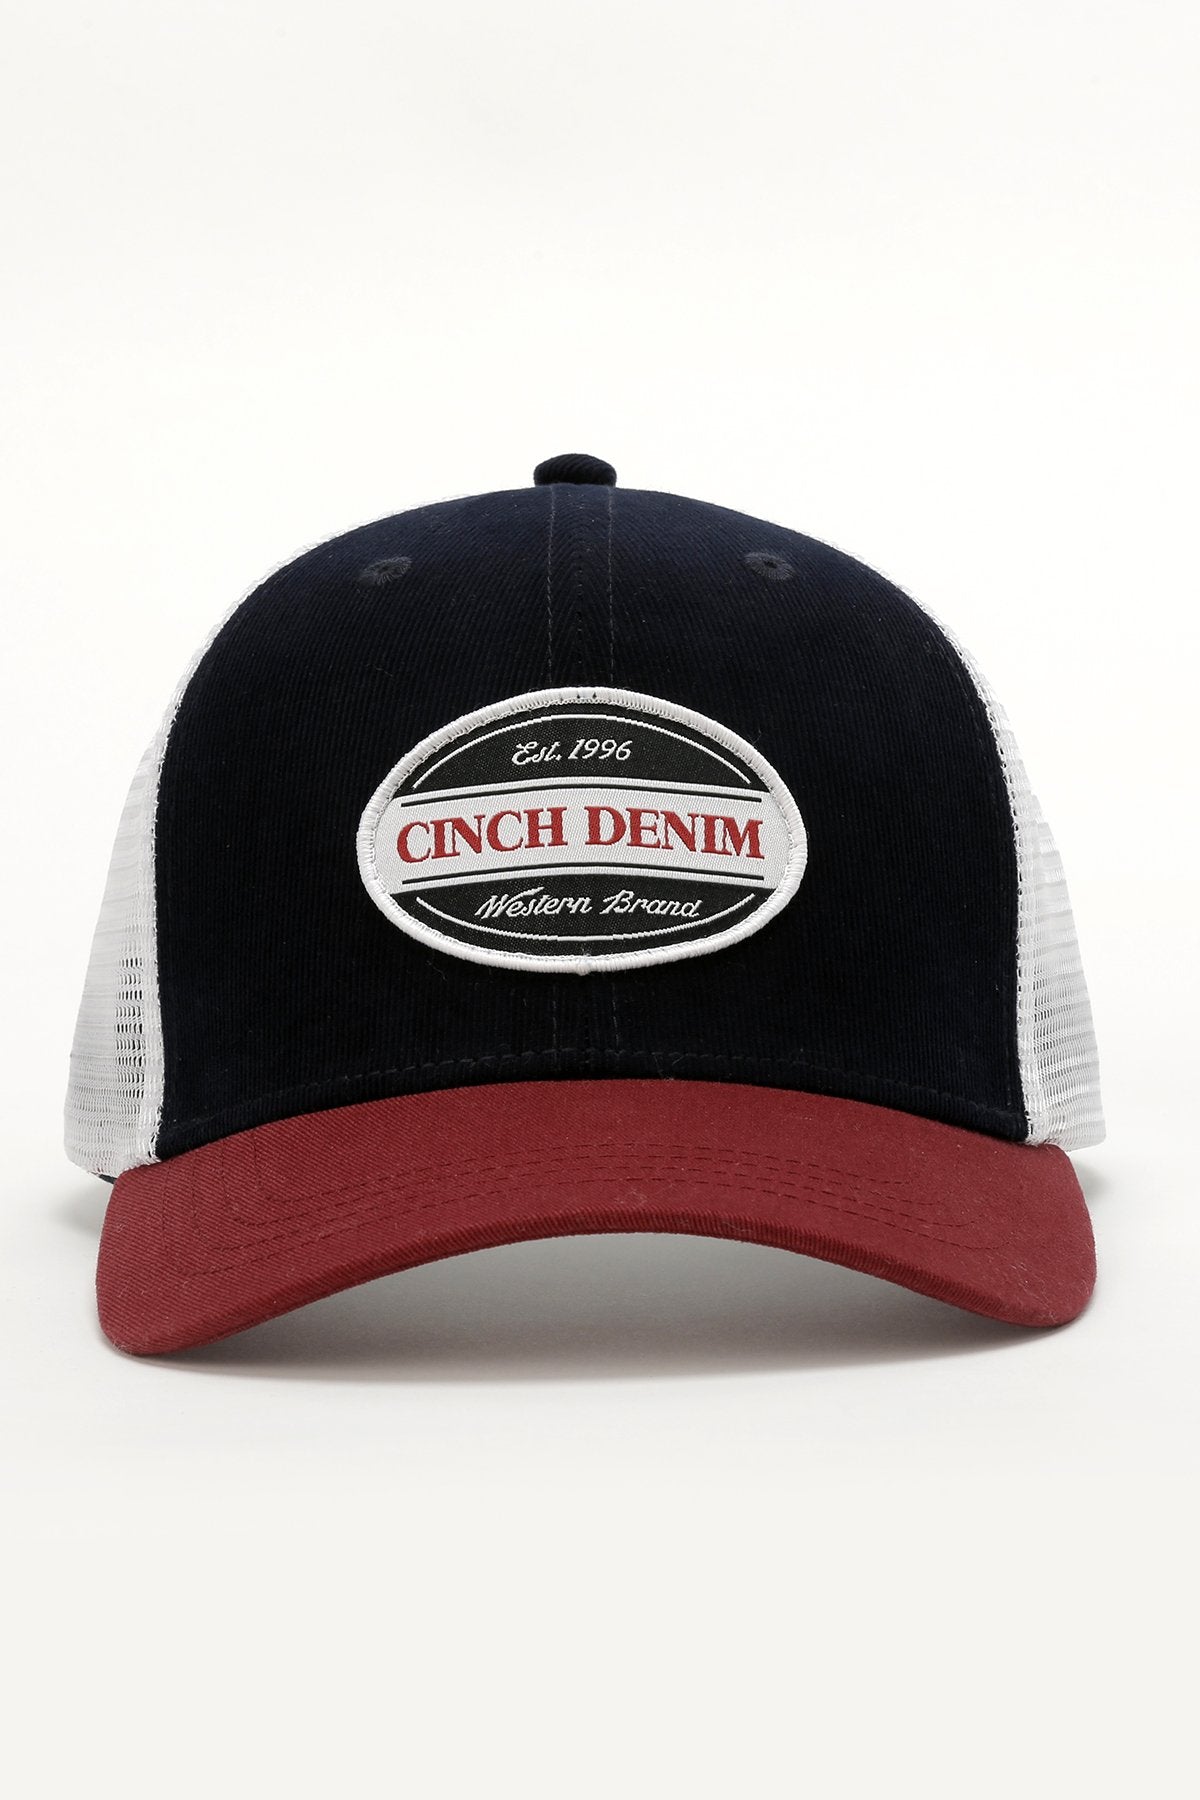 Cinch Denim Trucker Cap - Navy/Red